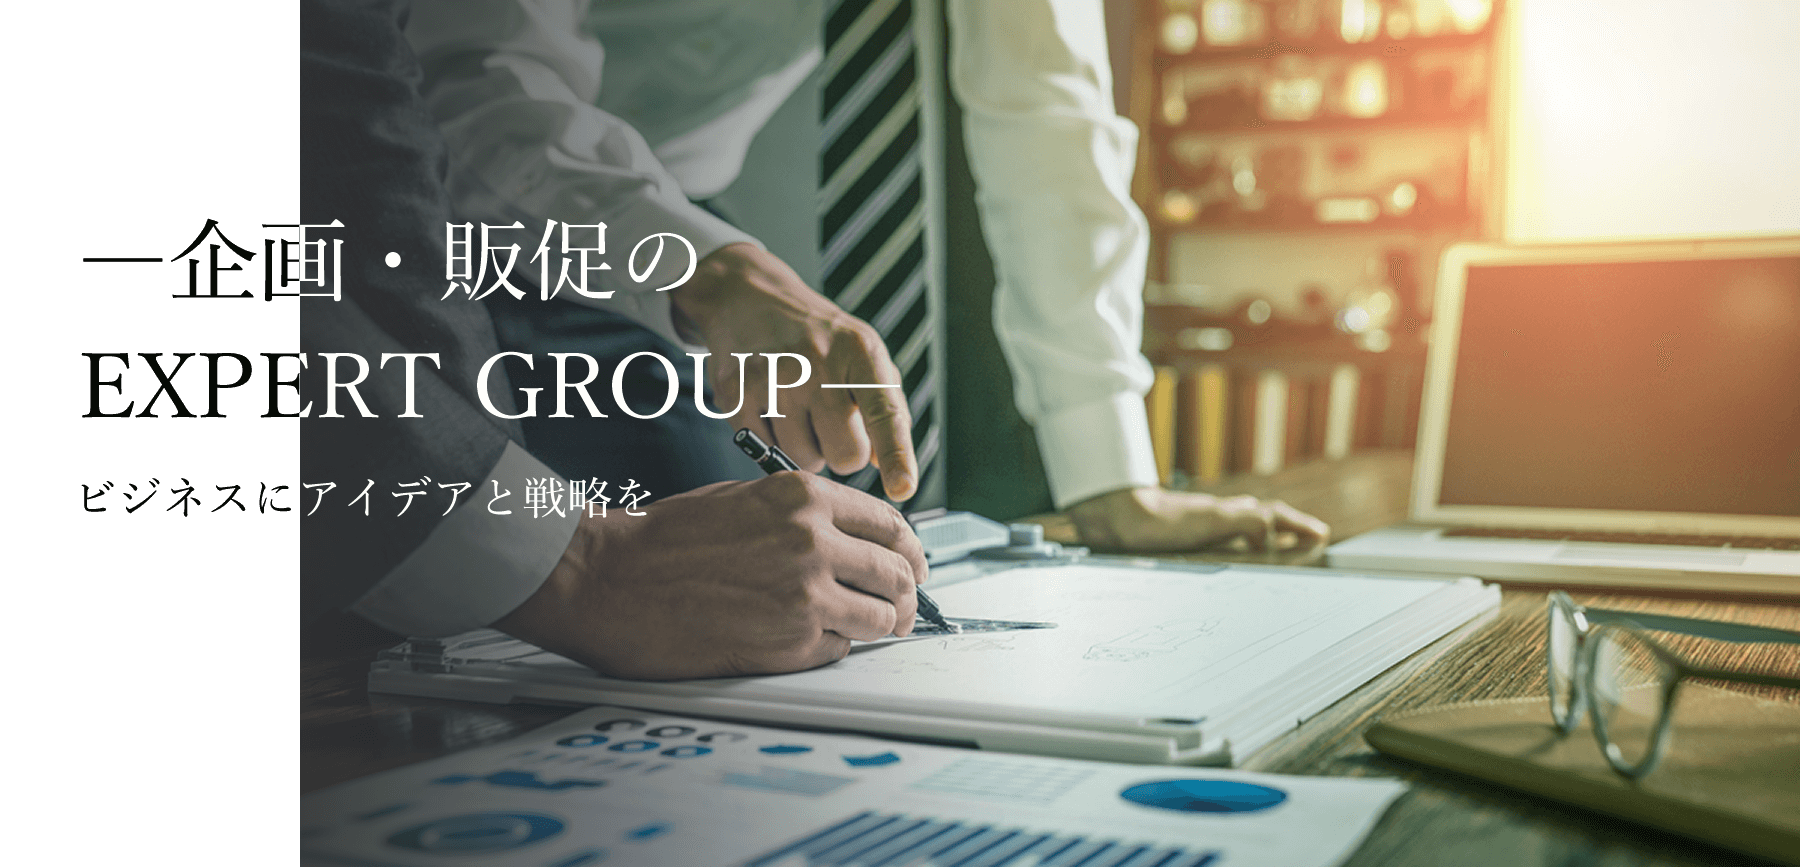 企画・販促の EXPERT GROUP ビジネスにアイデアと戦略を